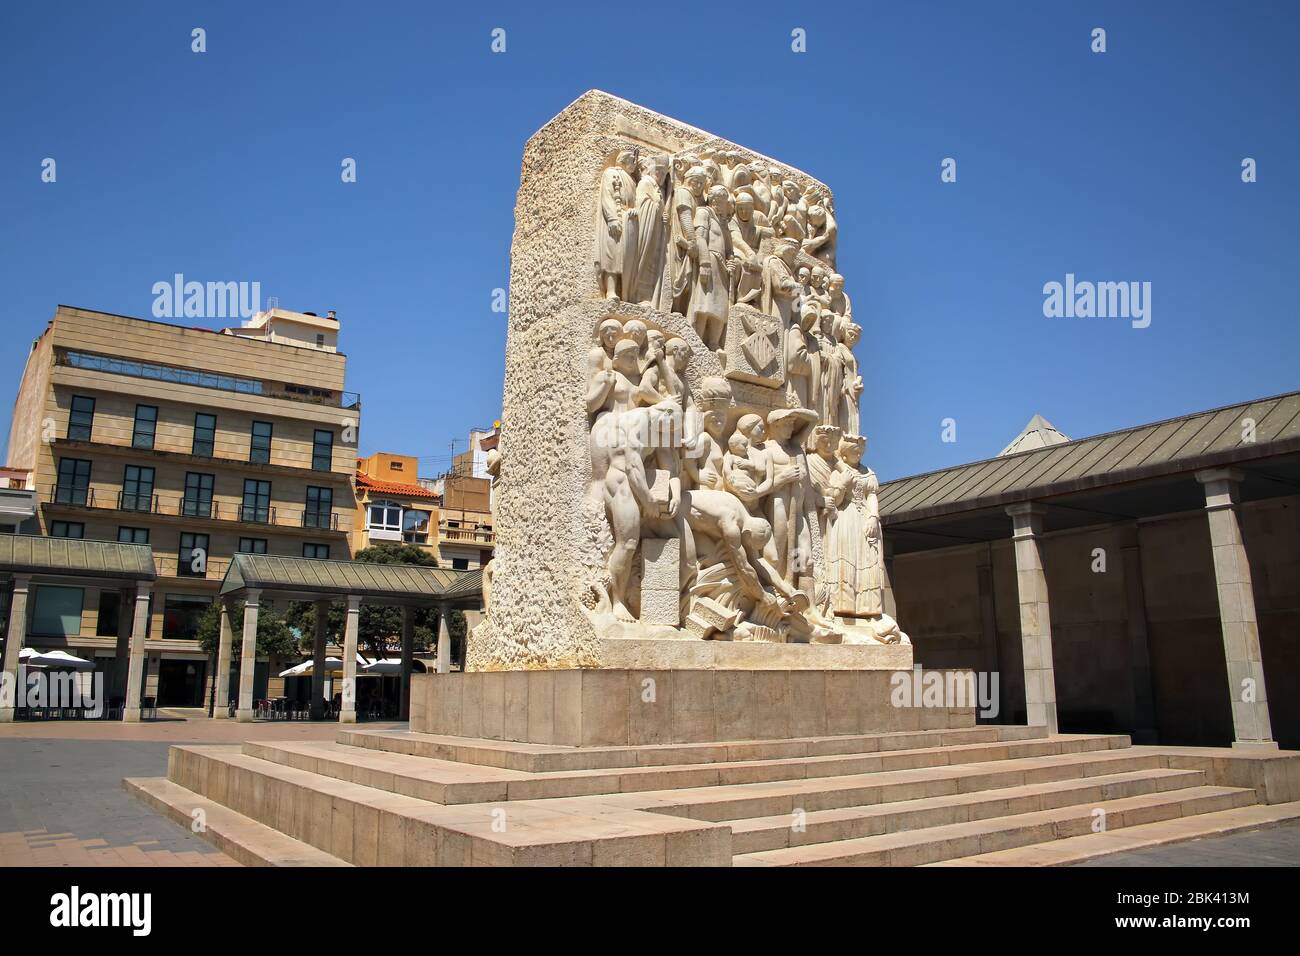 Santa Clara Square or plaza, sculpture tribute to castellon by Llorens Poy, Castellon de la Plana, Valencia Province, Spain. Stock Photo